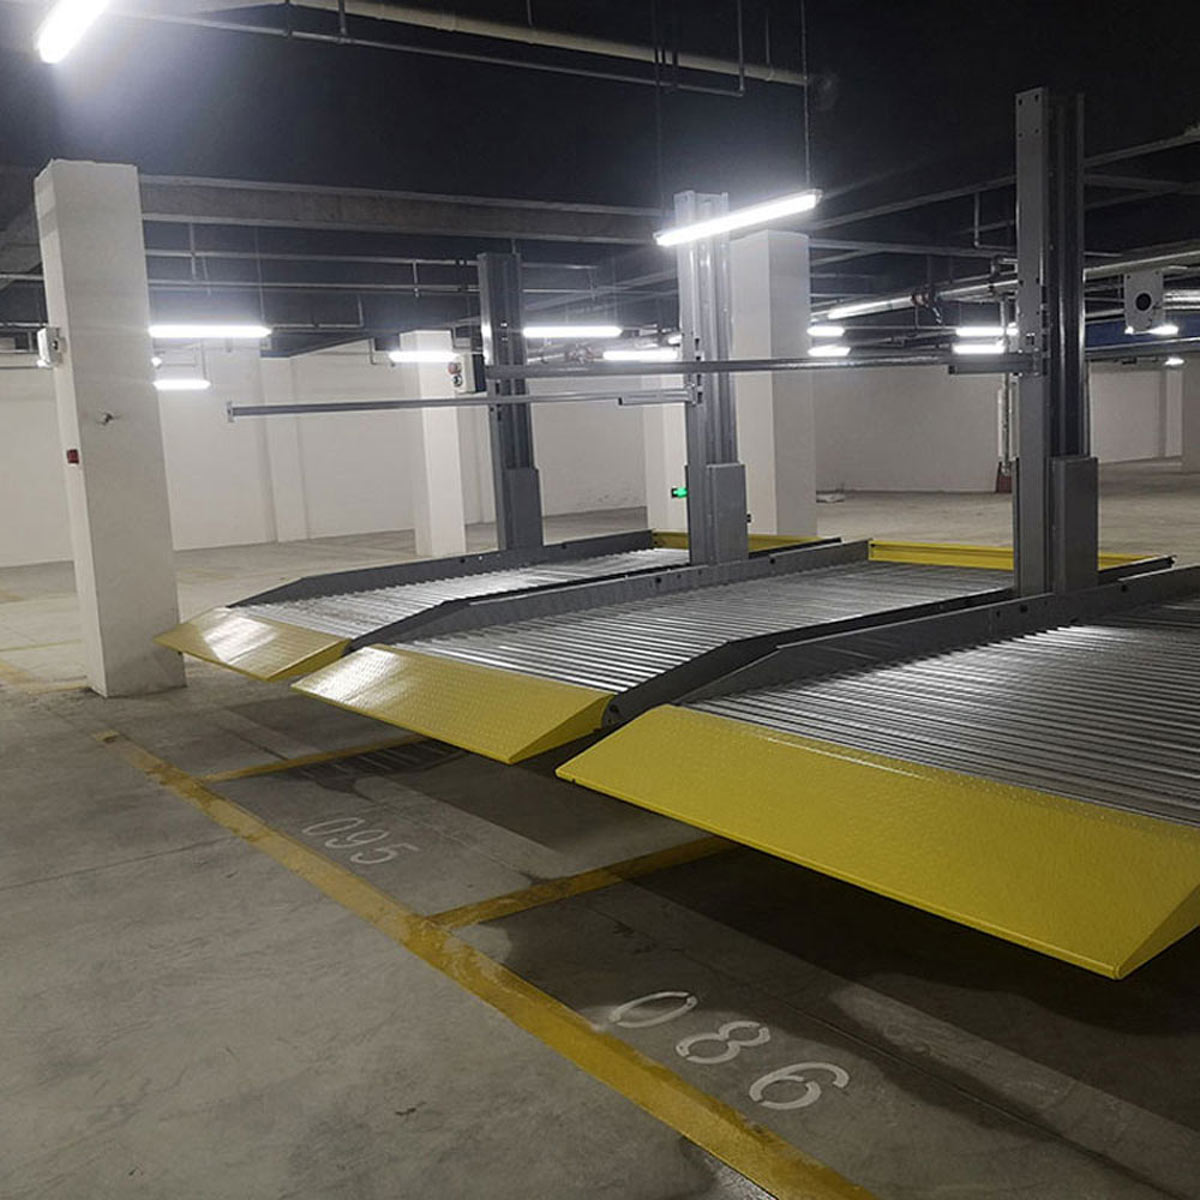 酉陽立體停車庫改善區域停車四種解決模式